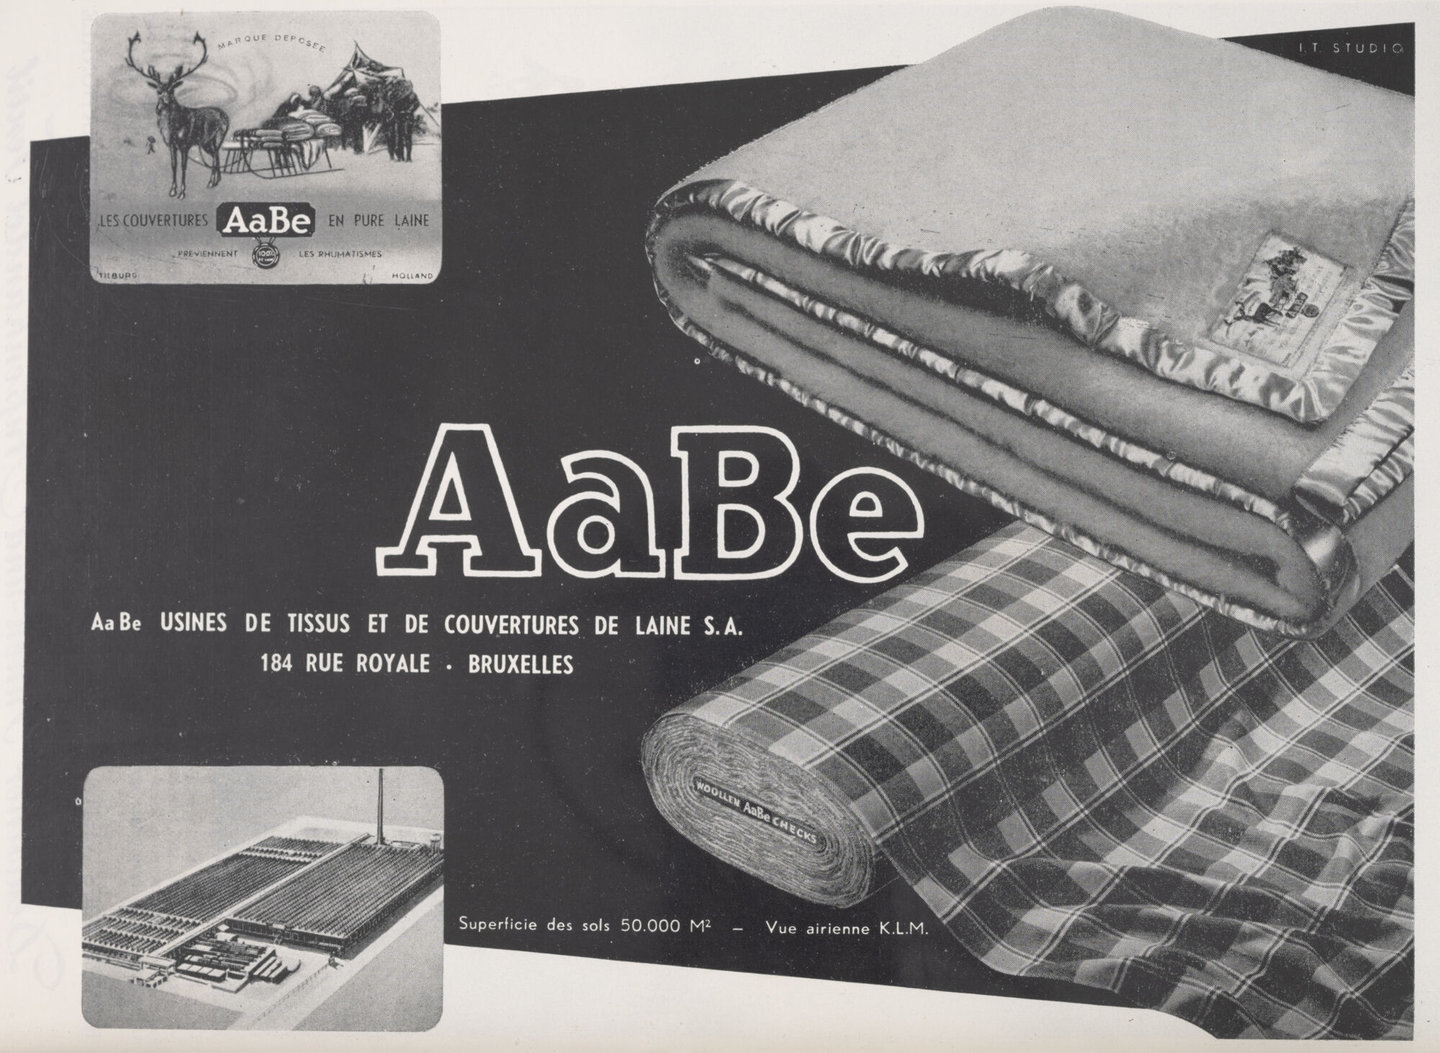 Reclame voor wollendekenfabriek AaBe in Nederland